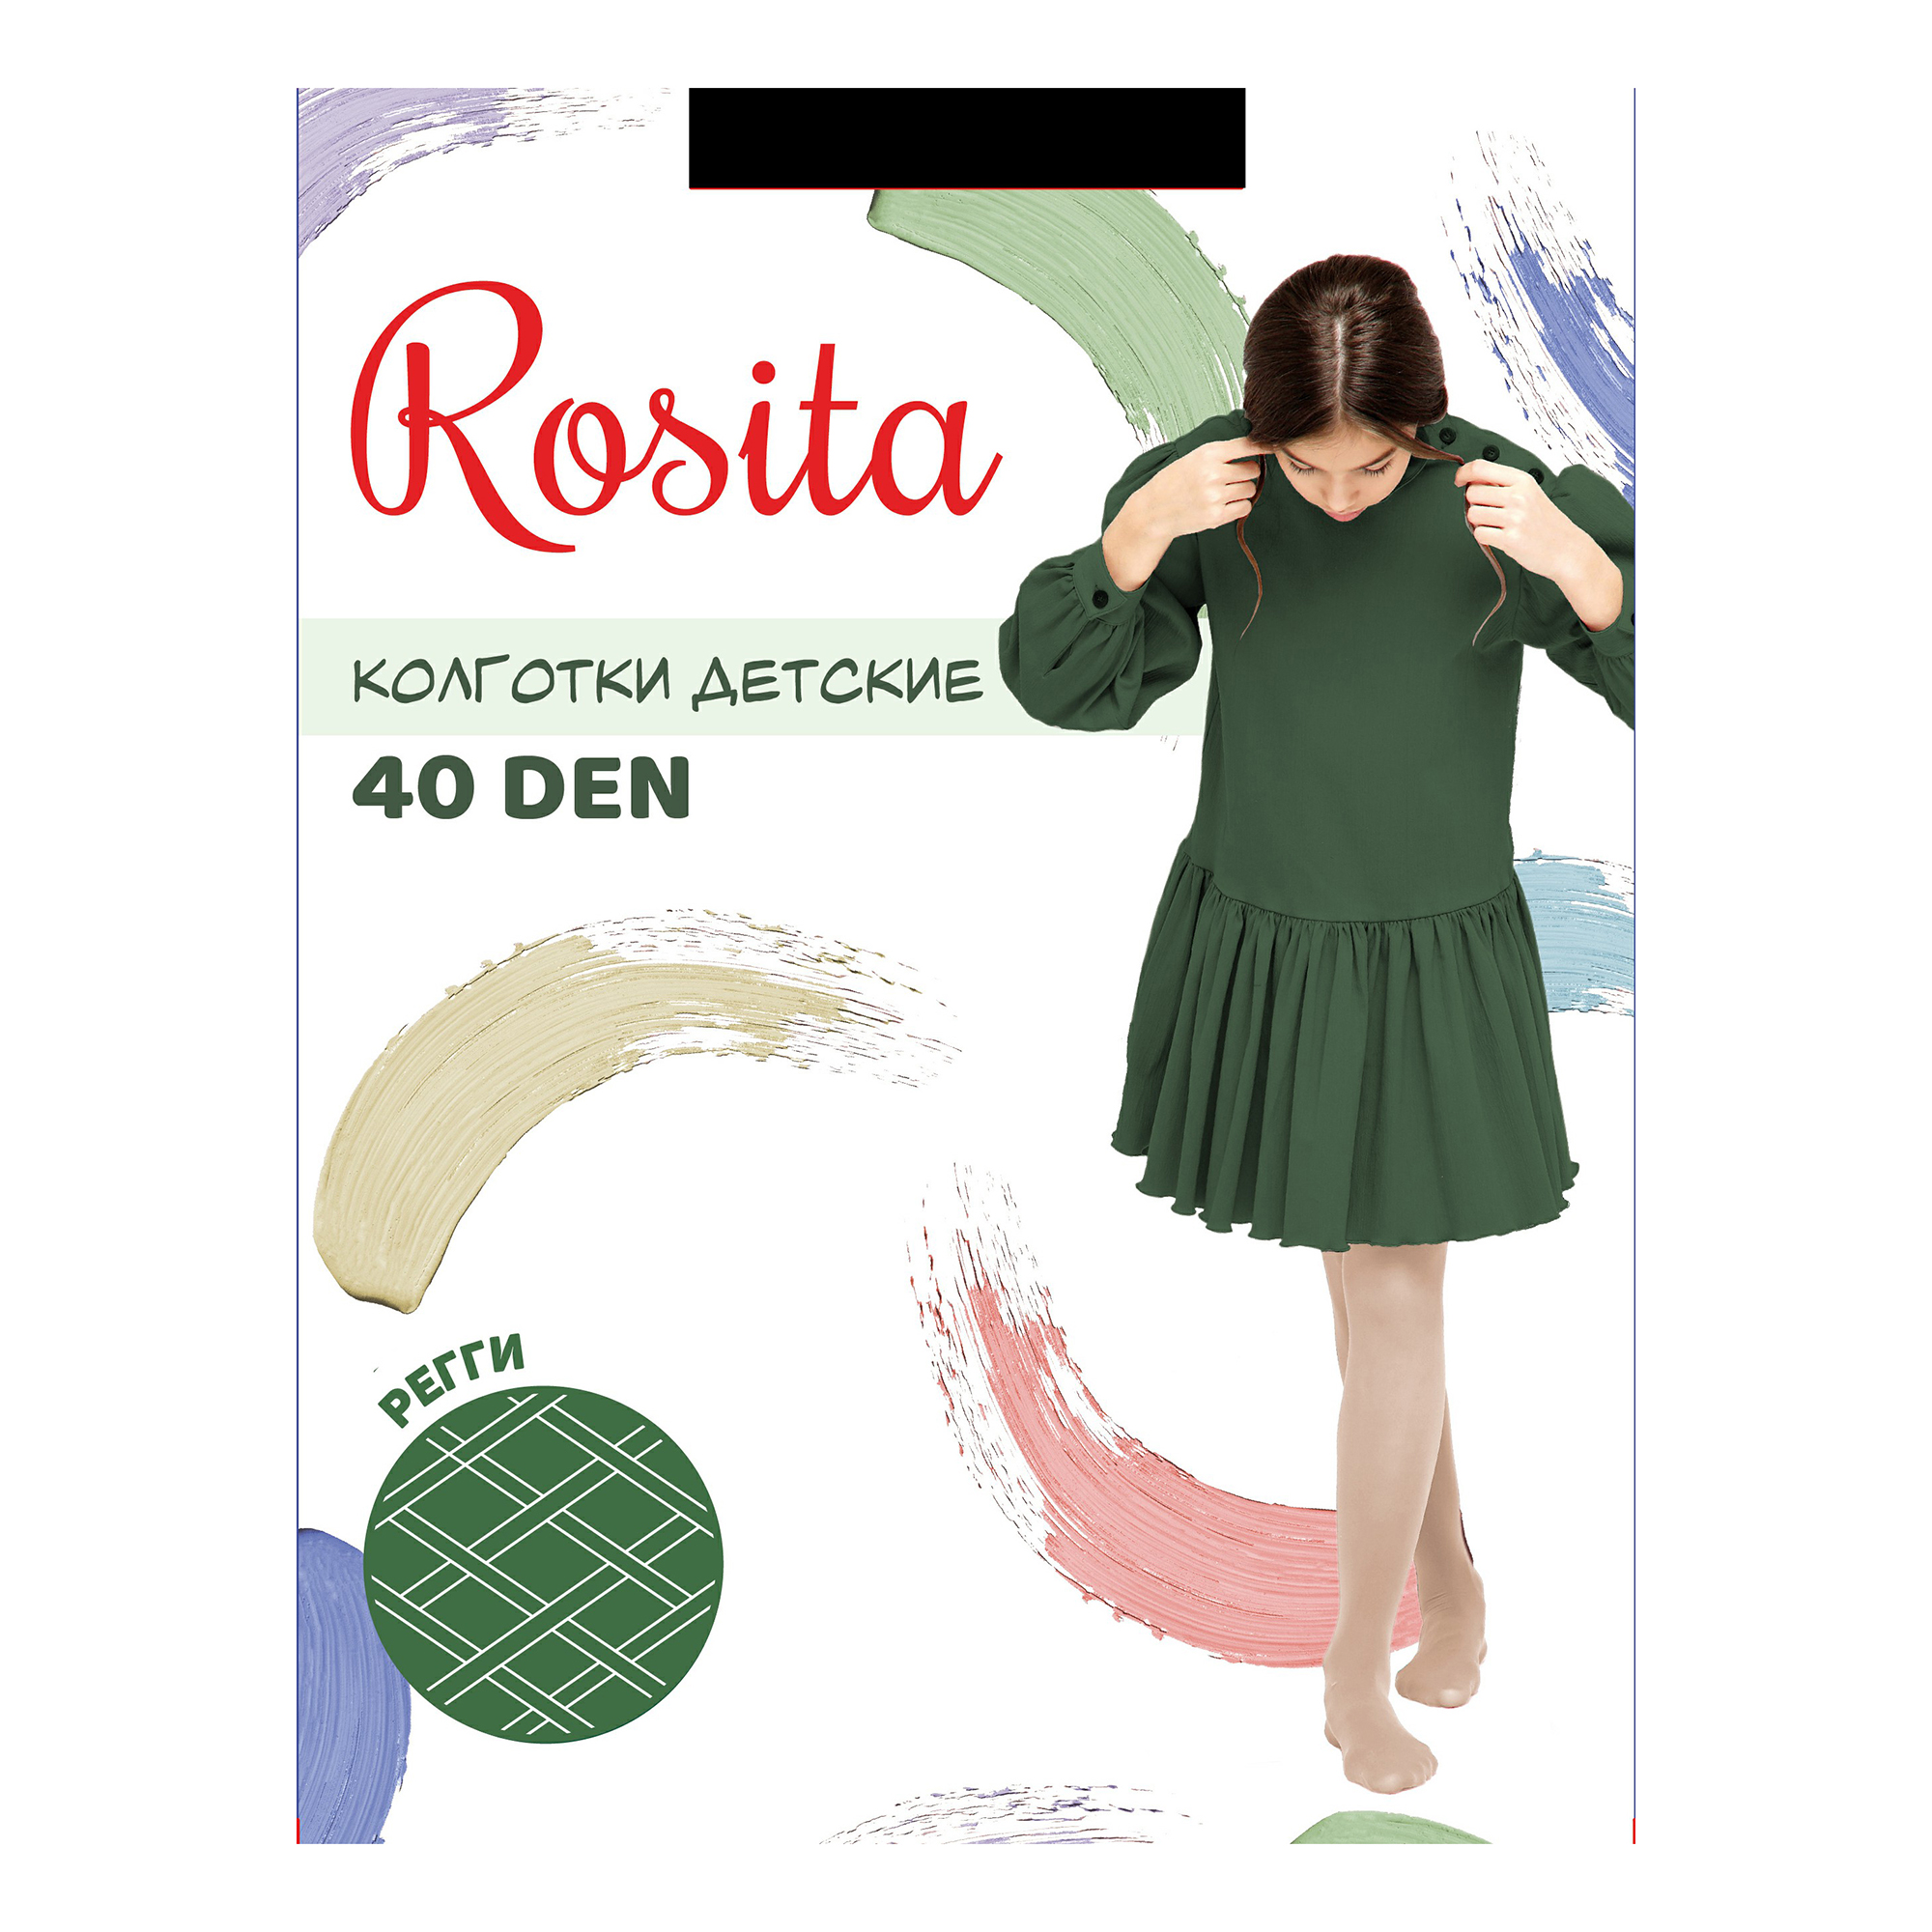 Колготки для девочек Rosita Регги 40 den полиамид сапфировые р 6-8